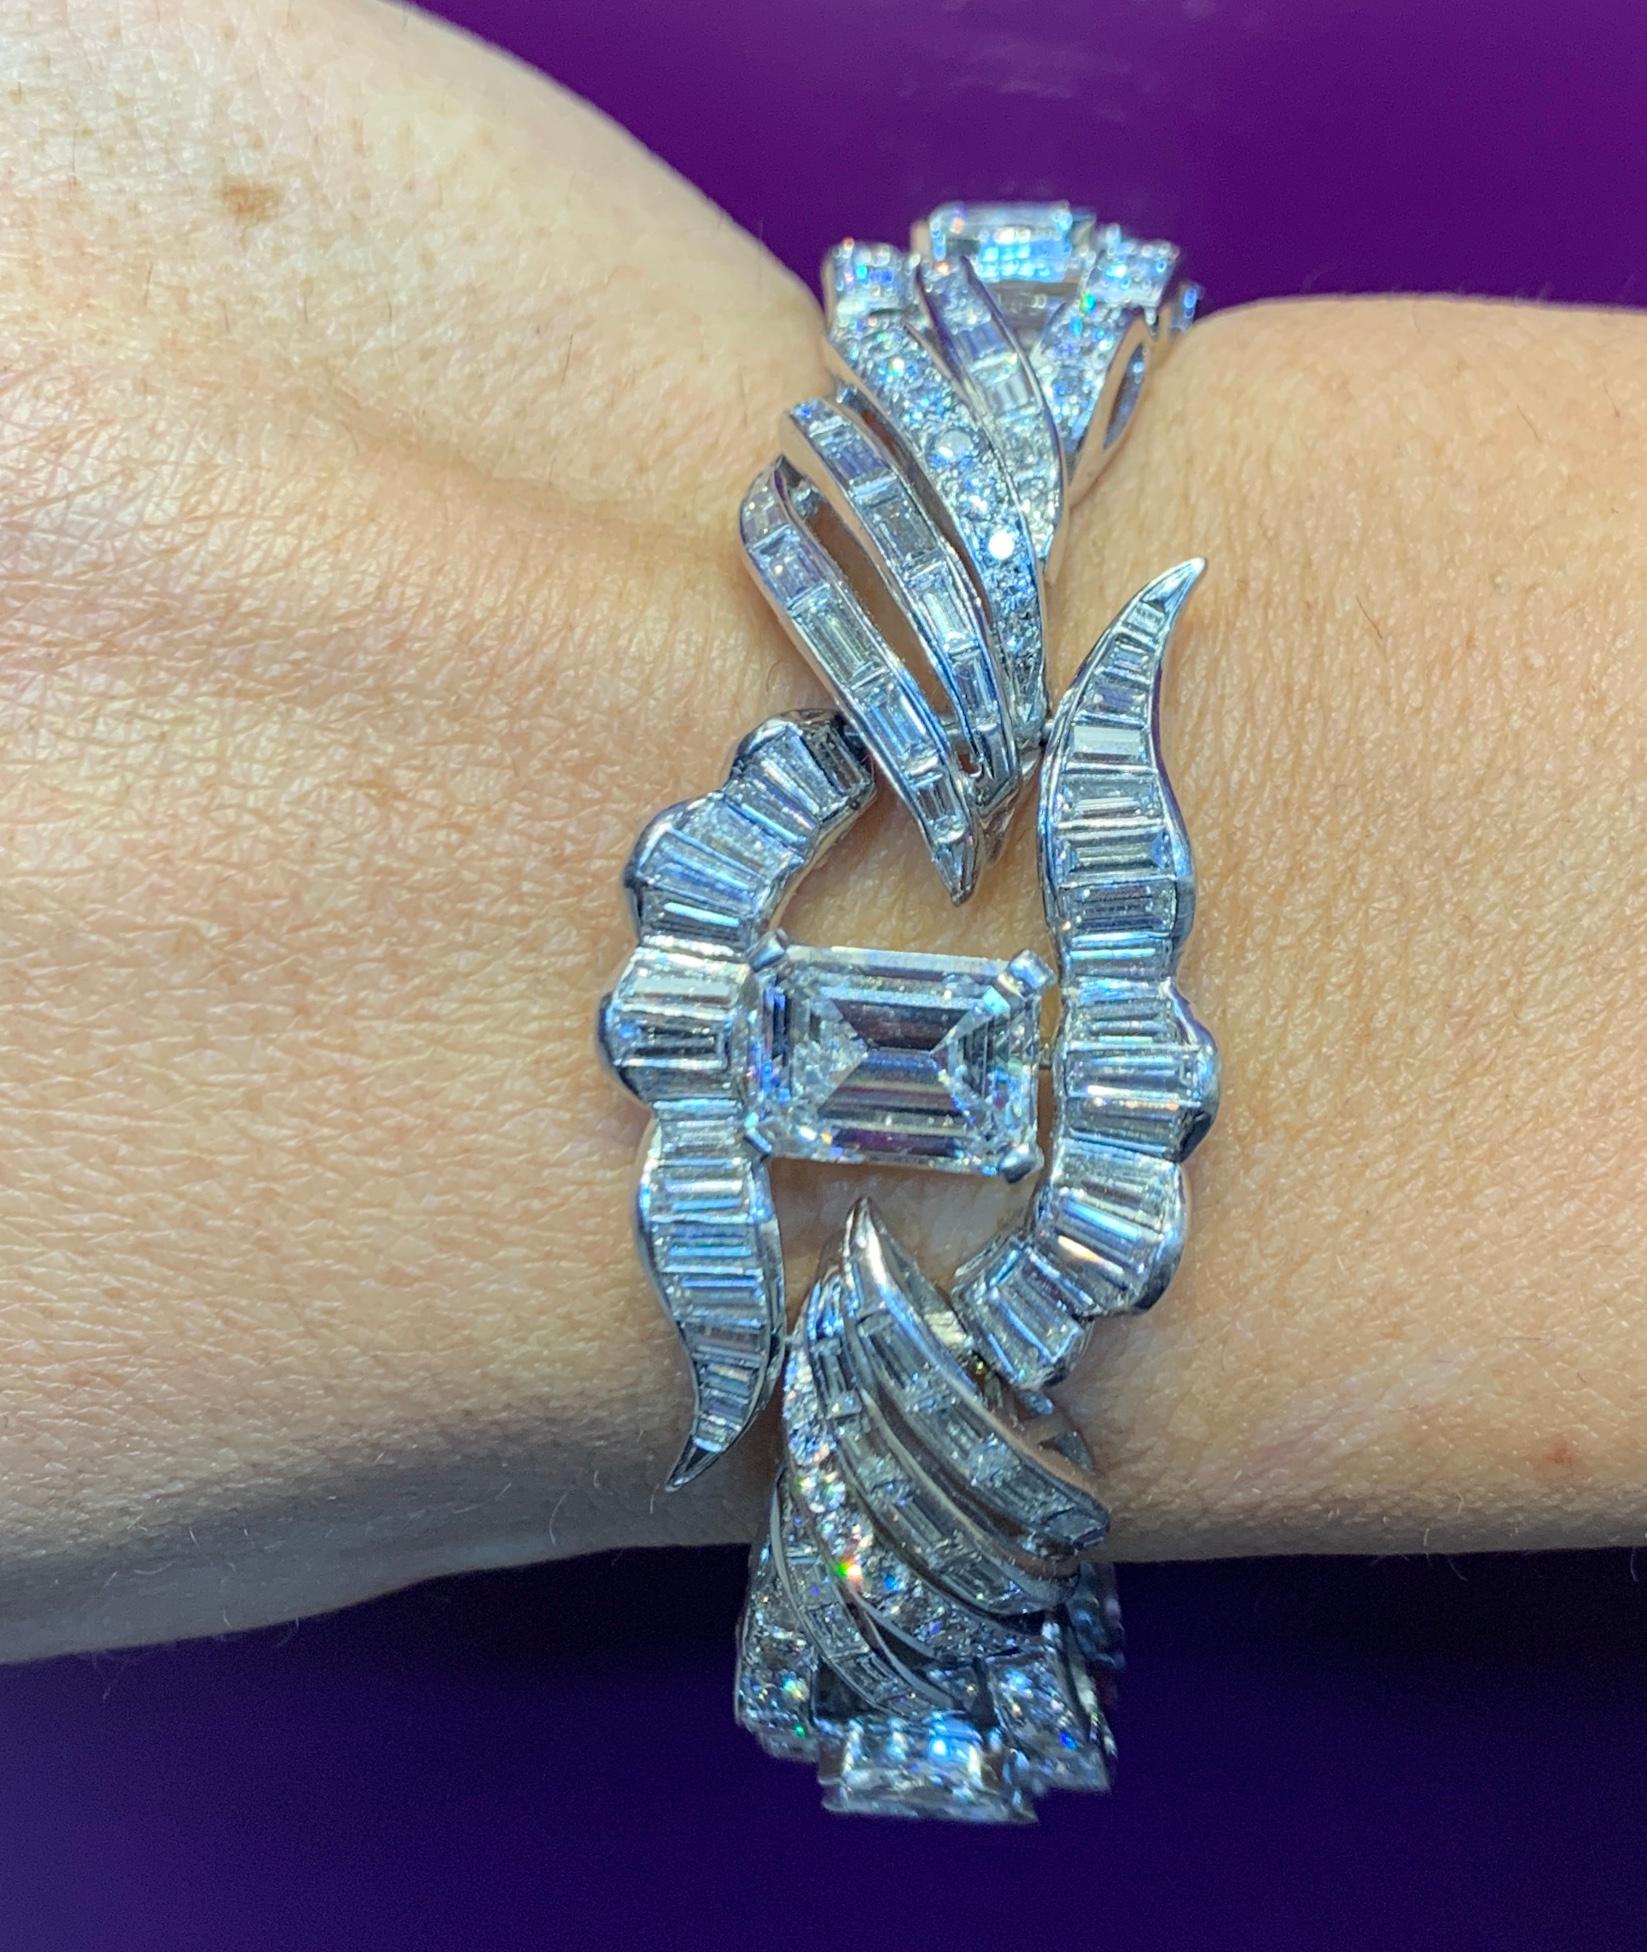 GIA-zertifiziertes Diamantarmband mit Smaragdschliff 
1 Diamant im Smaragdschliff, 3,53 Karat
10 Diamanten mit einem Gewicht von etwa 3,36 Karat
1Restliche runde und Baguette-Diamanten ca  12.20 Karat
Abmessungen: 7.25